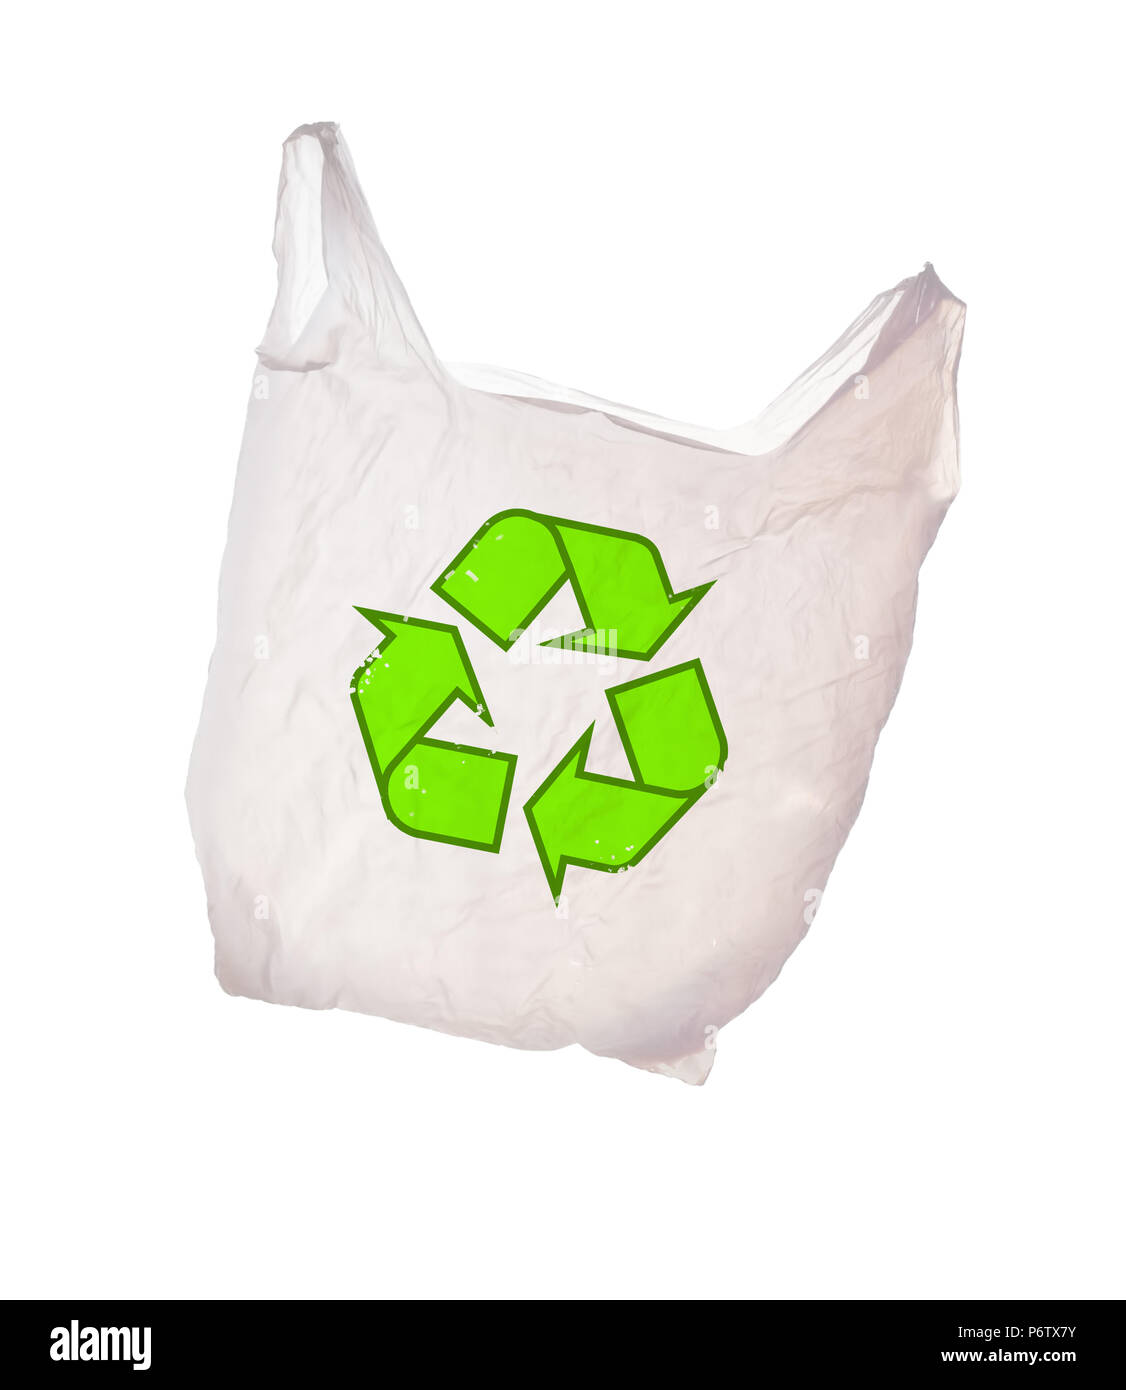 White il sacchetto di plastica con il logo di riciclo isolato su uno sfondo bianco. Il riciclaggio. Foto Stock